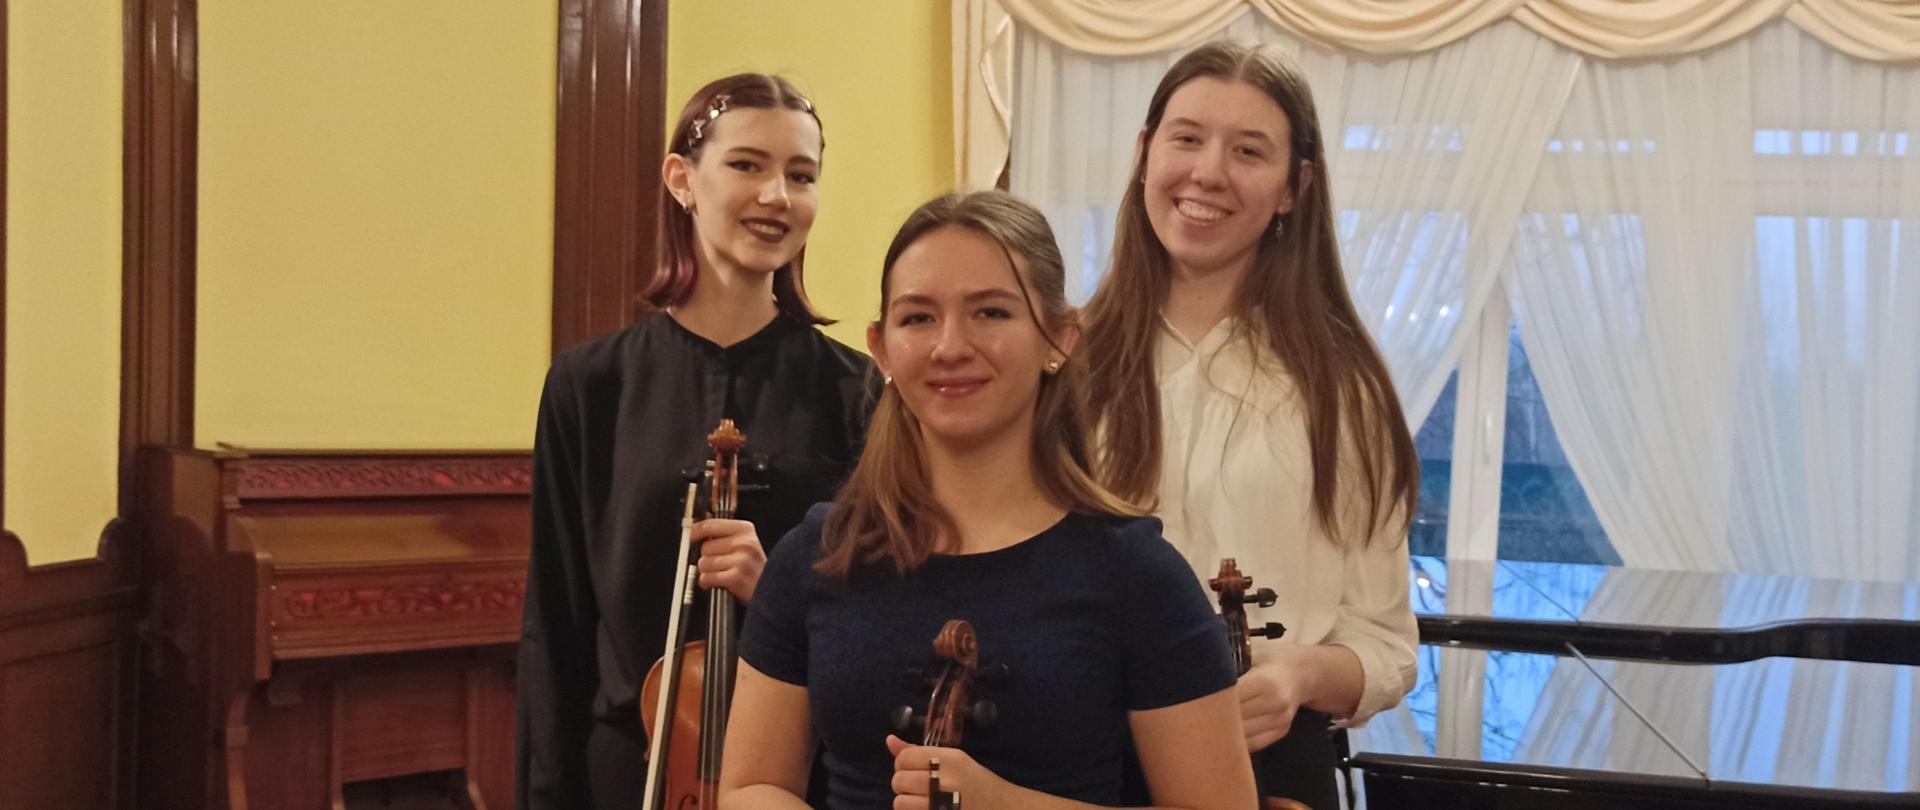 Zdjęcie kolorowe. Trzy uczennice ze skrzypcami pozują do zdjęcia. W tle fortepian, po lewej stronie zabytkowa fisharmonia.